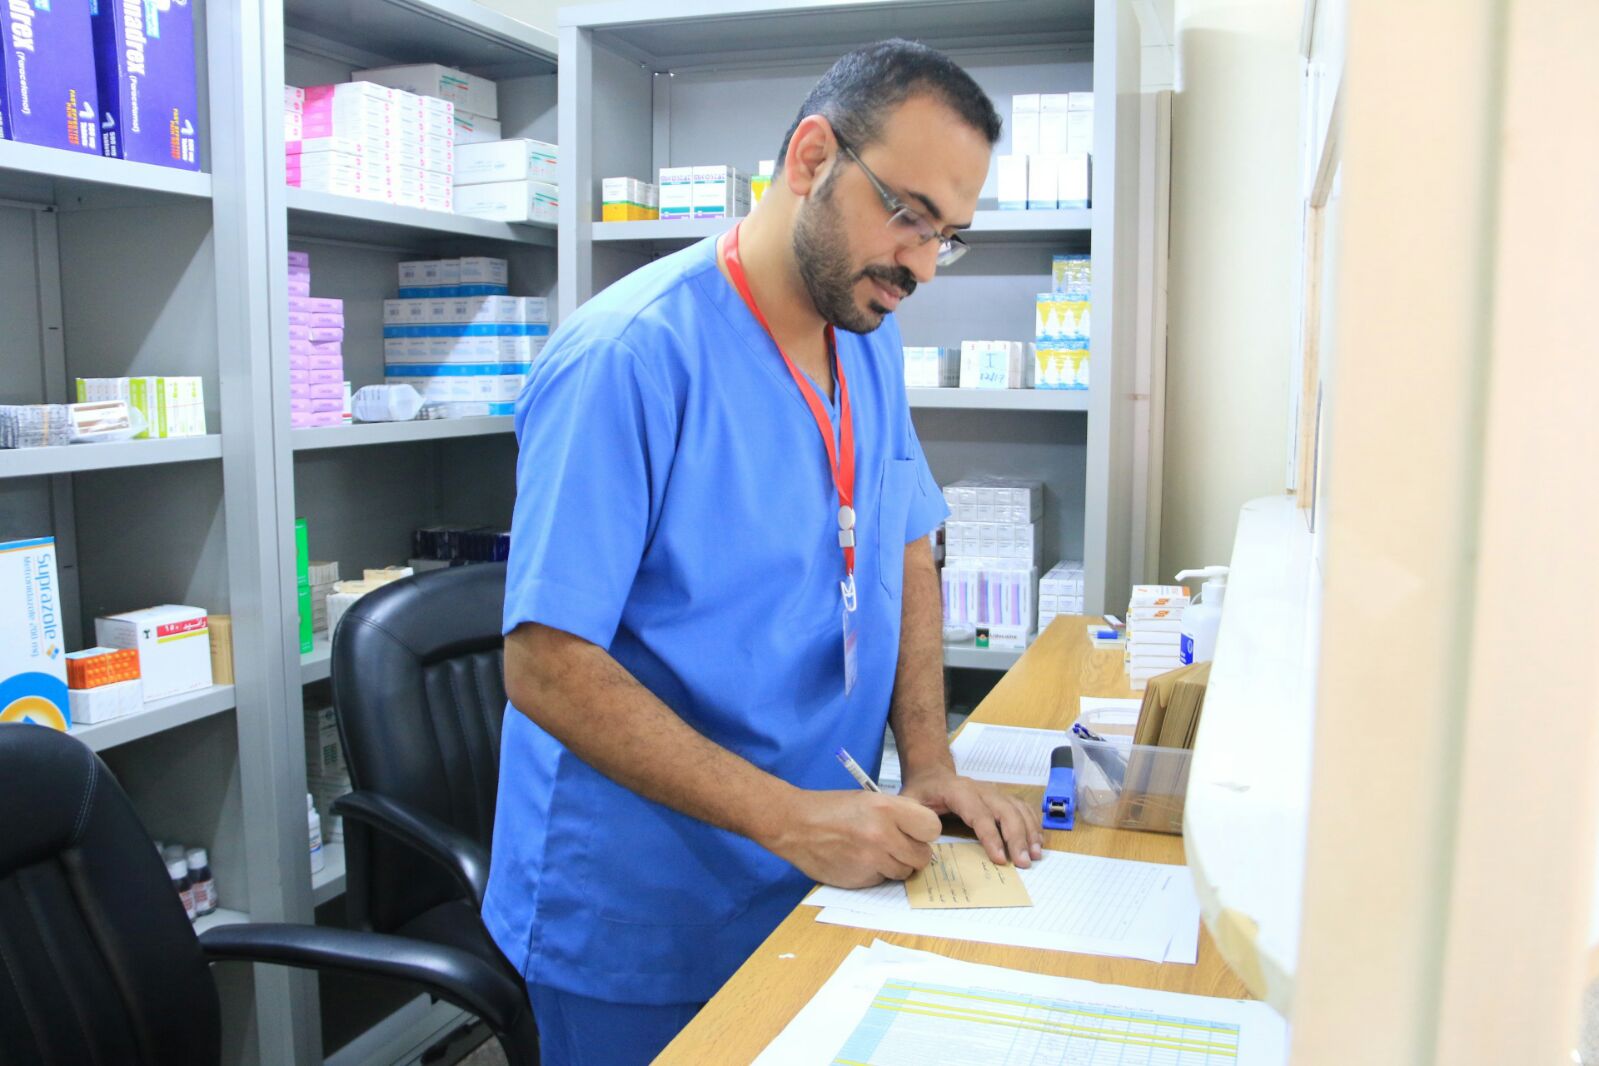 في اتصال هاتفي مع رئيس اللجنة الطبية للحج - سعادة وزيرة الصحة تطمئن على صحة وسلامة حجاج مملكة البحرين